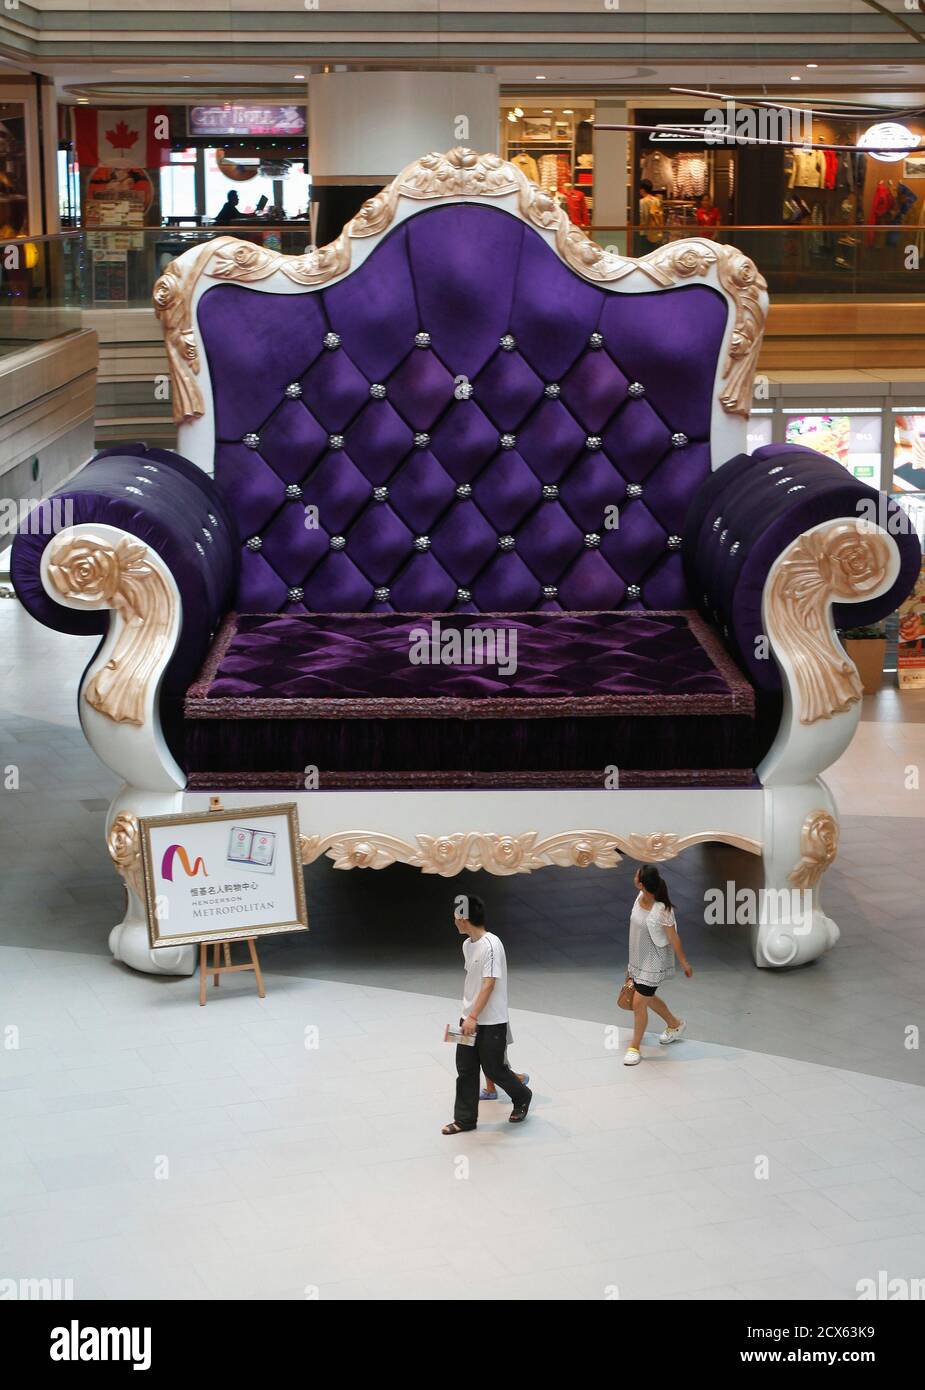 La gente camina pasando por un sofá-silla de 6.8 metros de altura (22 pies  de altura) y 7.7 metros de ancho (25 pies de ancho) en un centro comercial  en Shanghai, 3